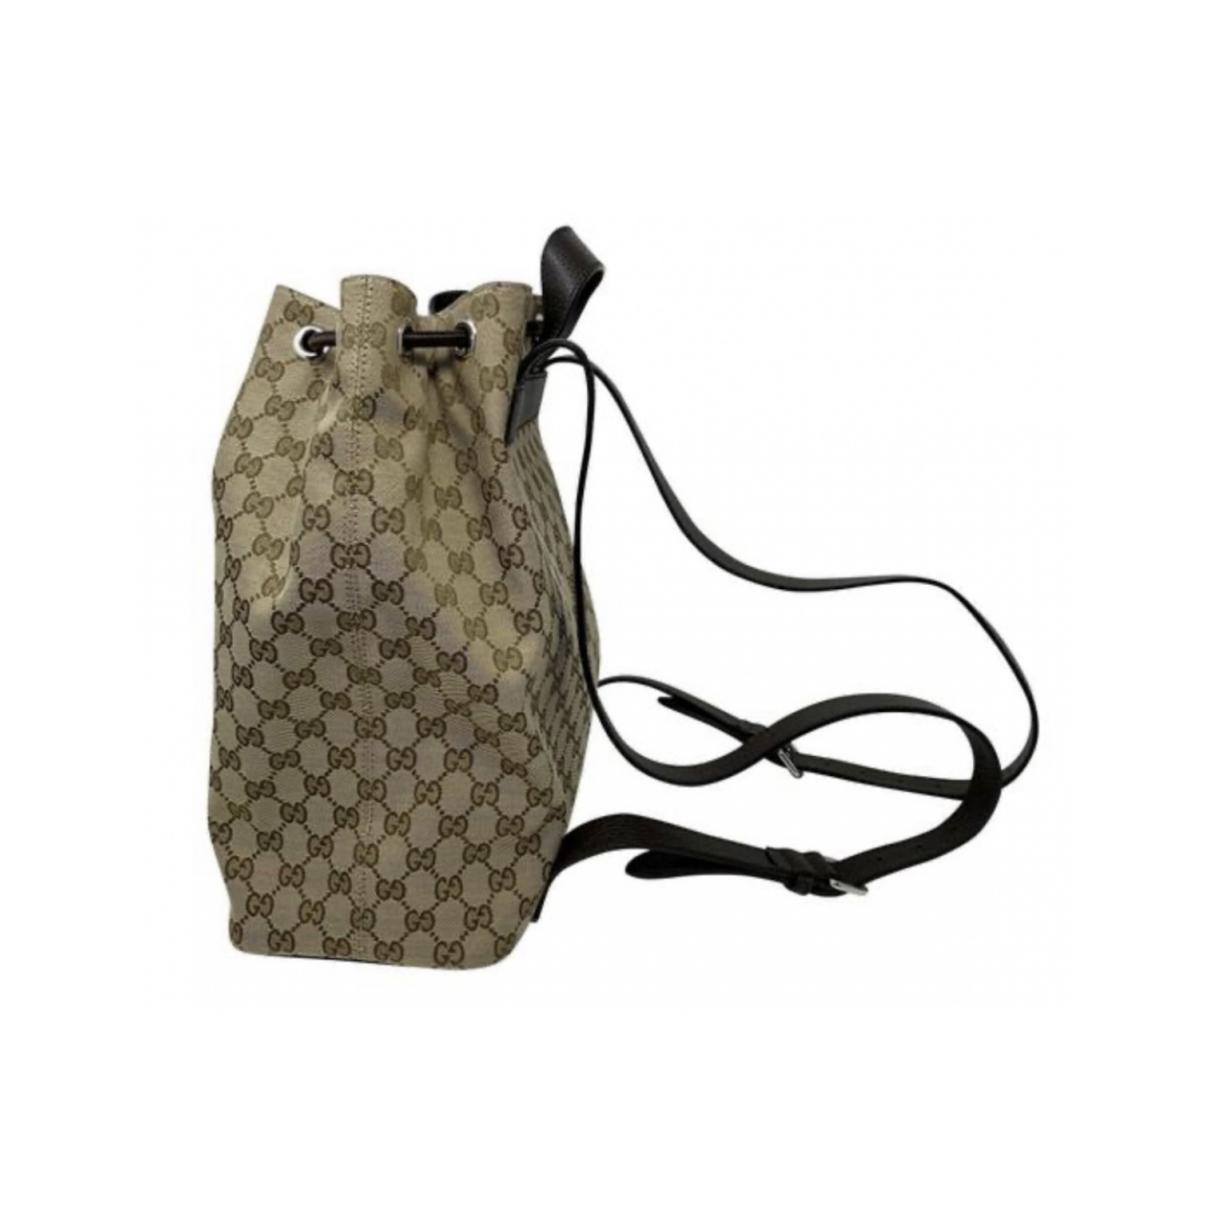 Cloth backpack - 4